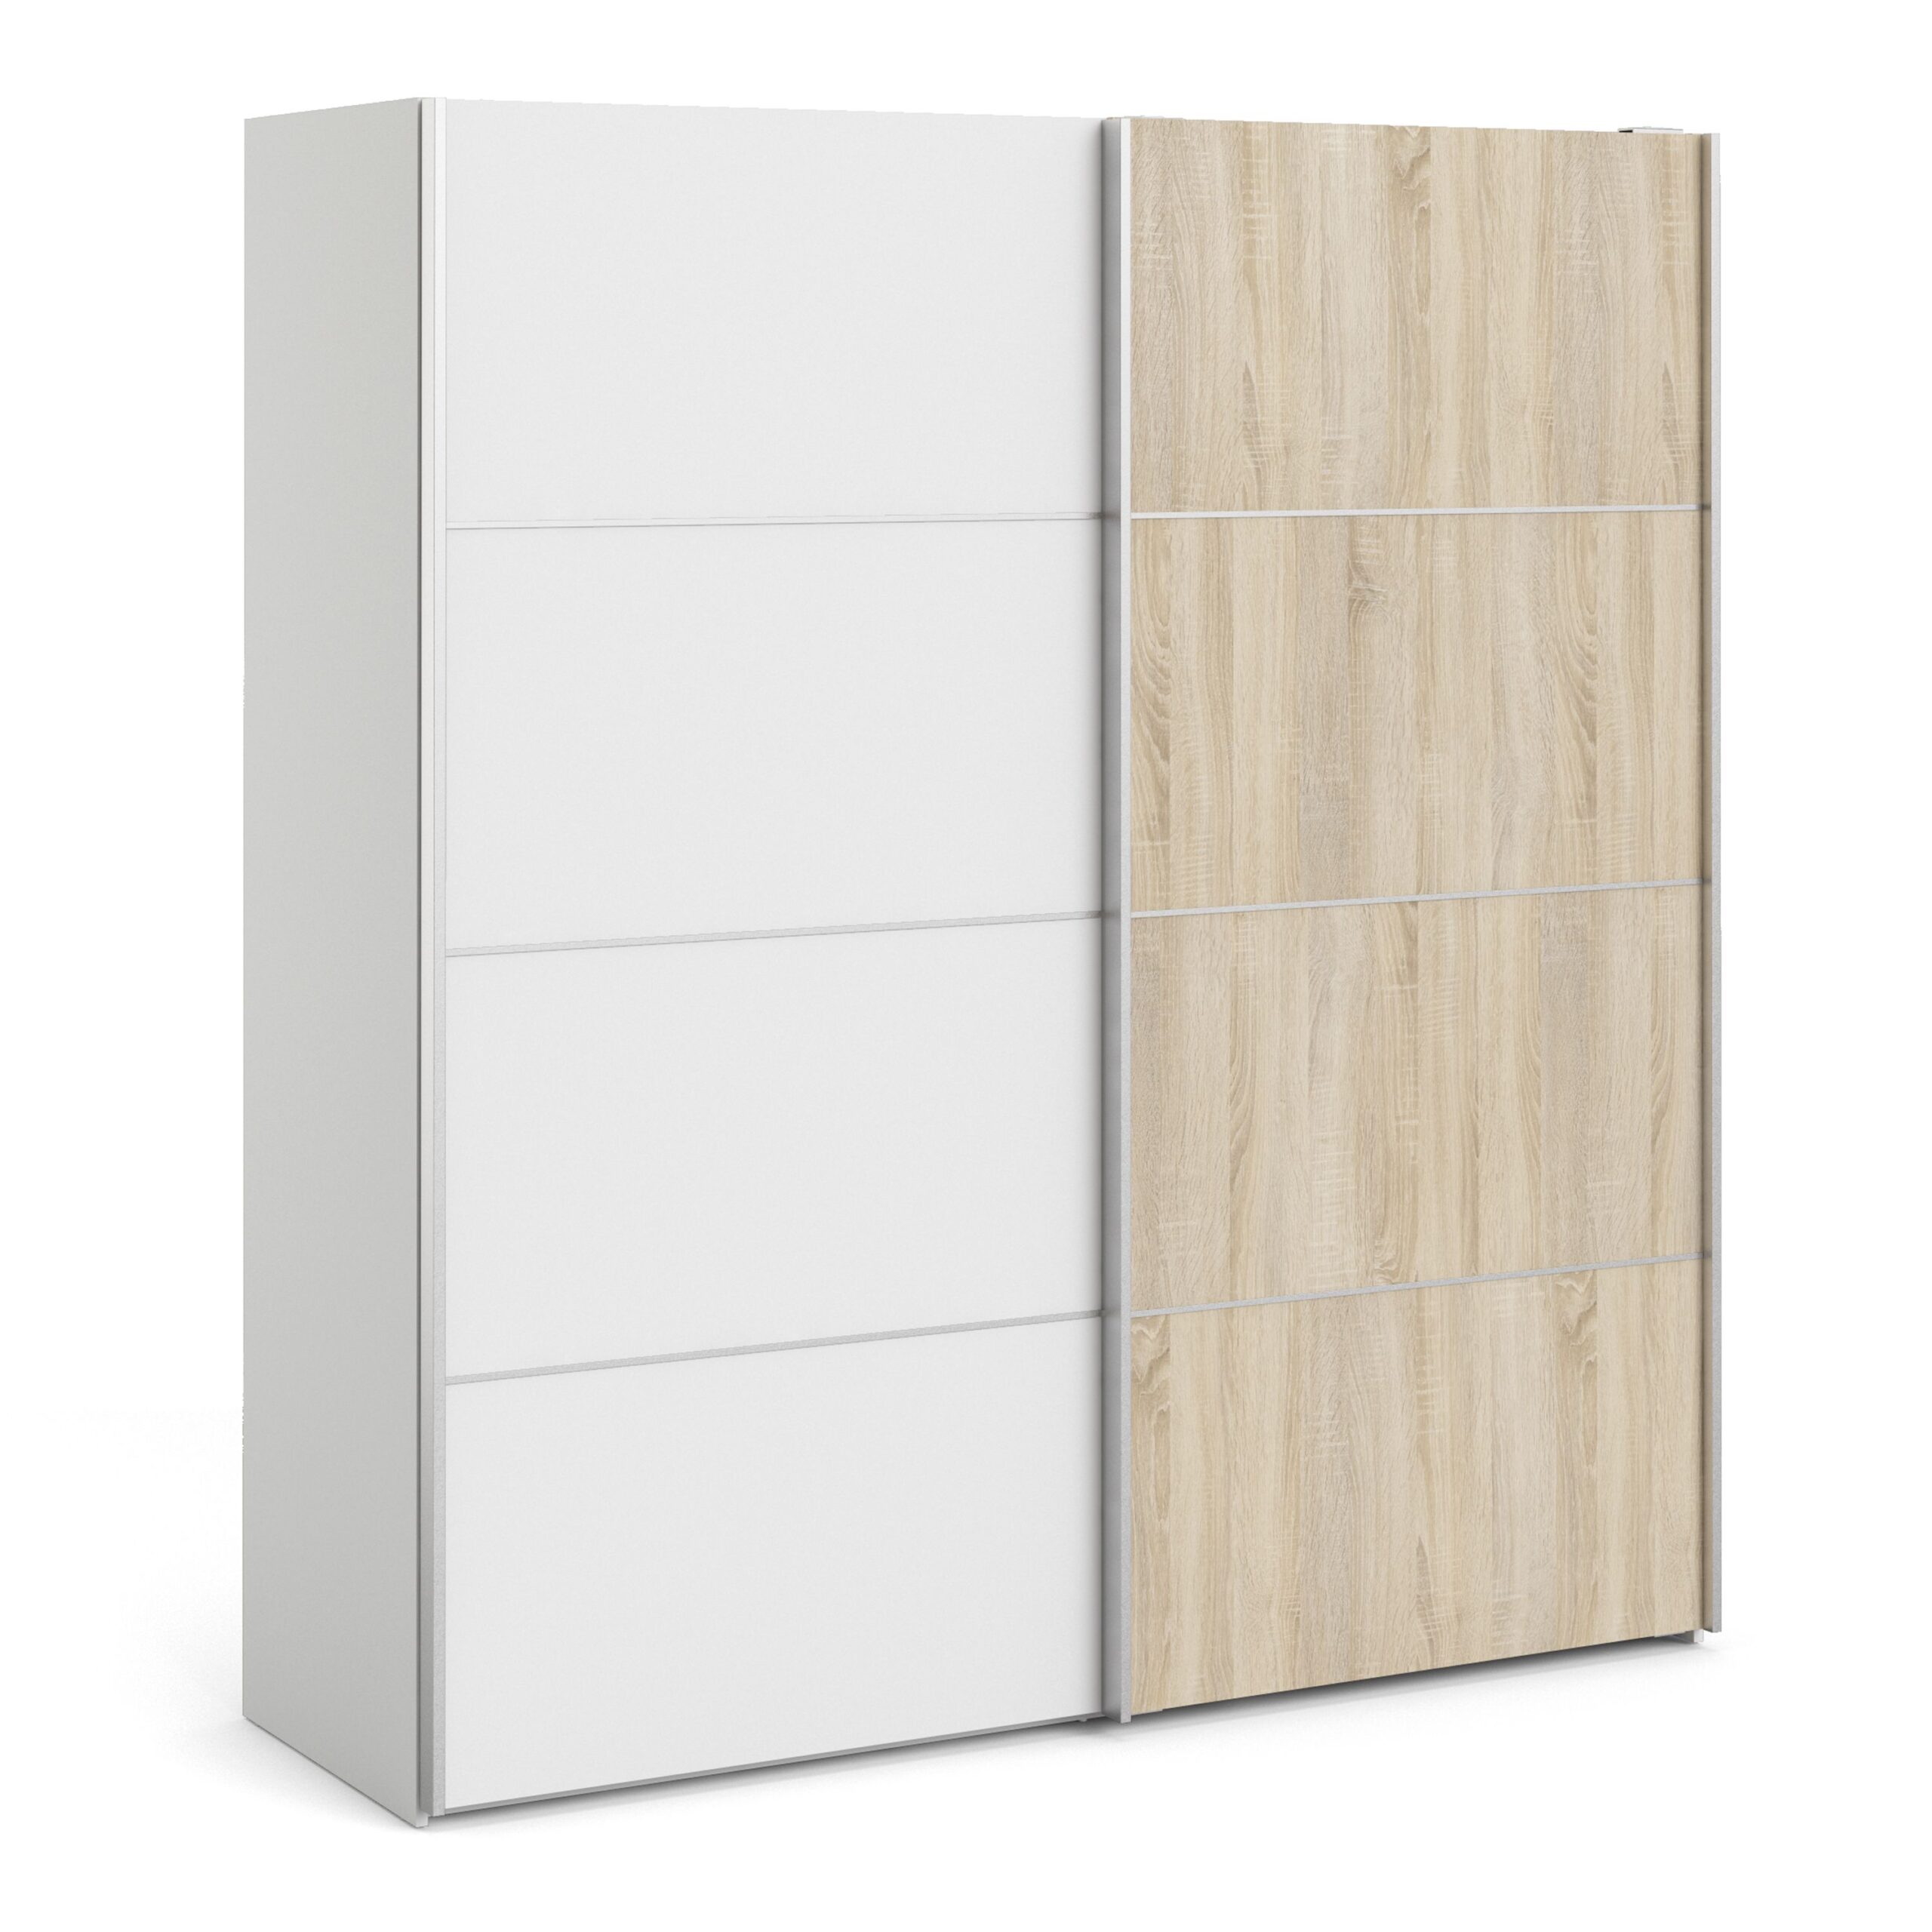 Phillipe Wardrobe White White Oak Doors Five Shelves